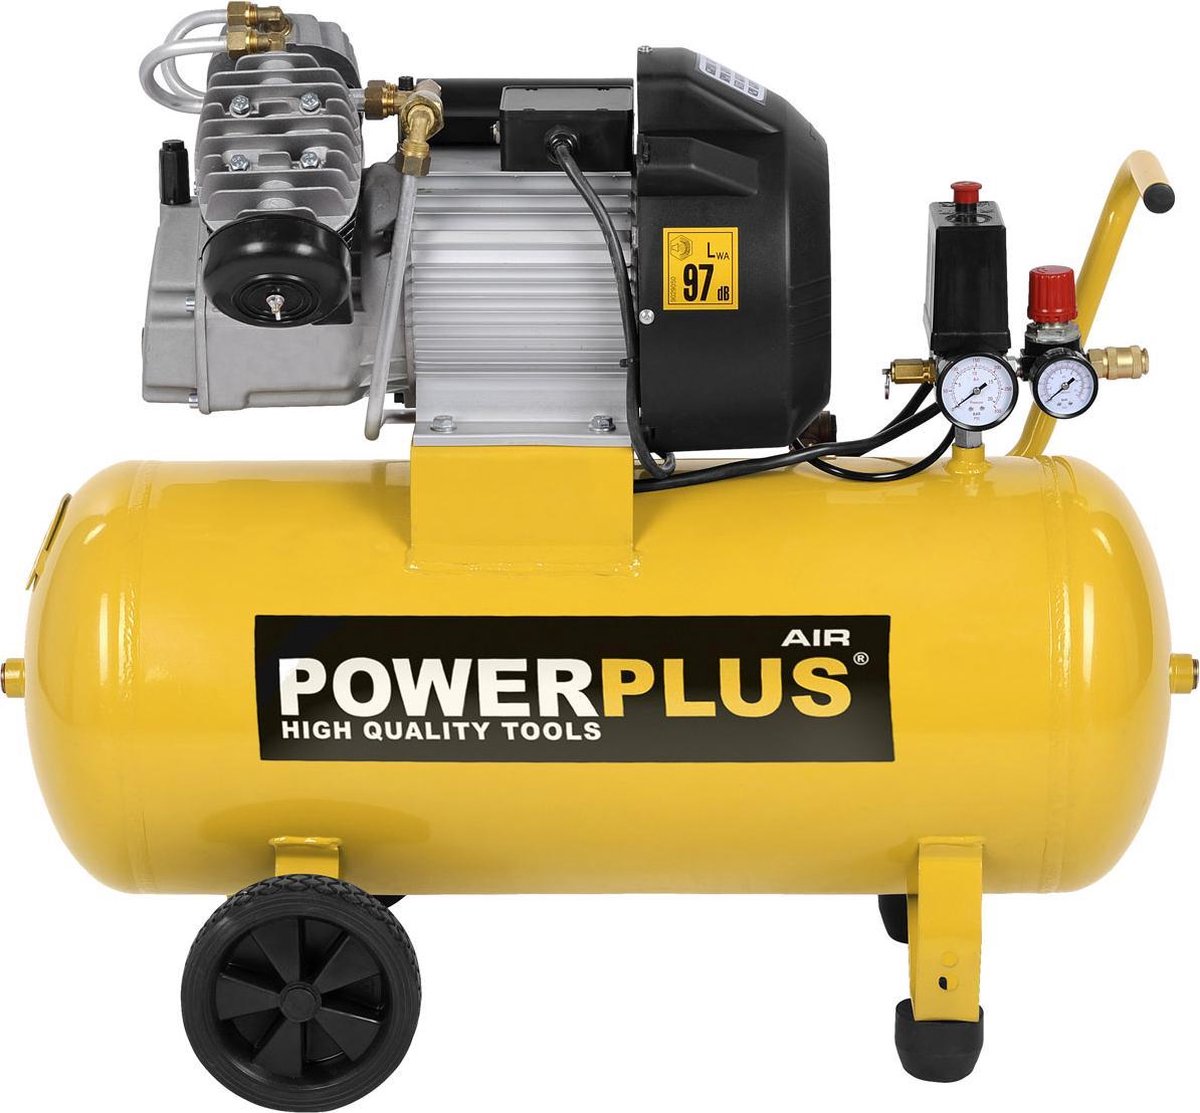 Powerplus POWX1770 Compressor Luchtcompressor 2200W 9 bar 50L tankinhoud